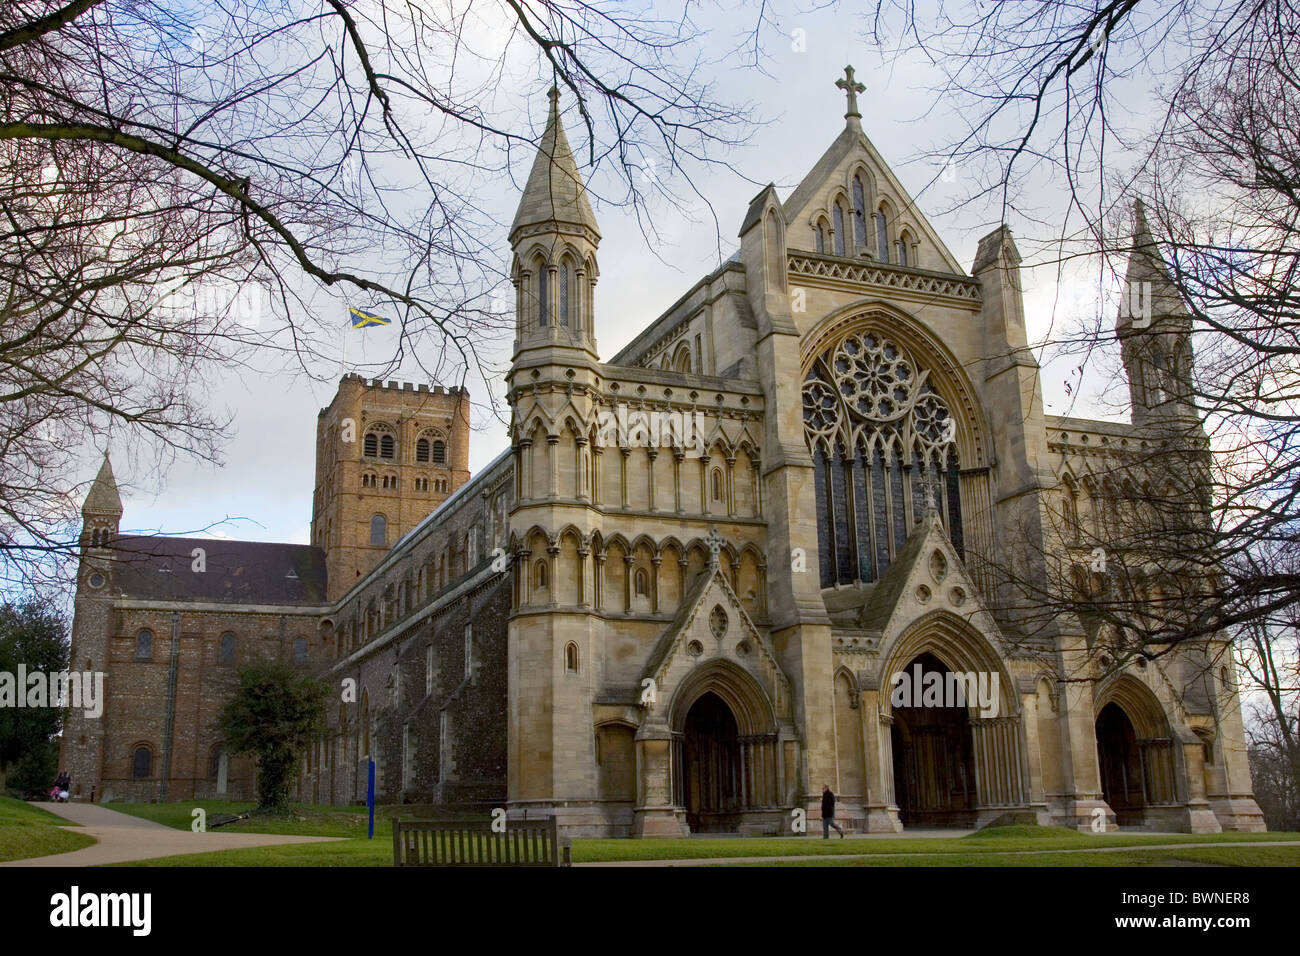 St Alban's Cathedral, le site de l'éducation nouvelle et de conservation Banque D'Images